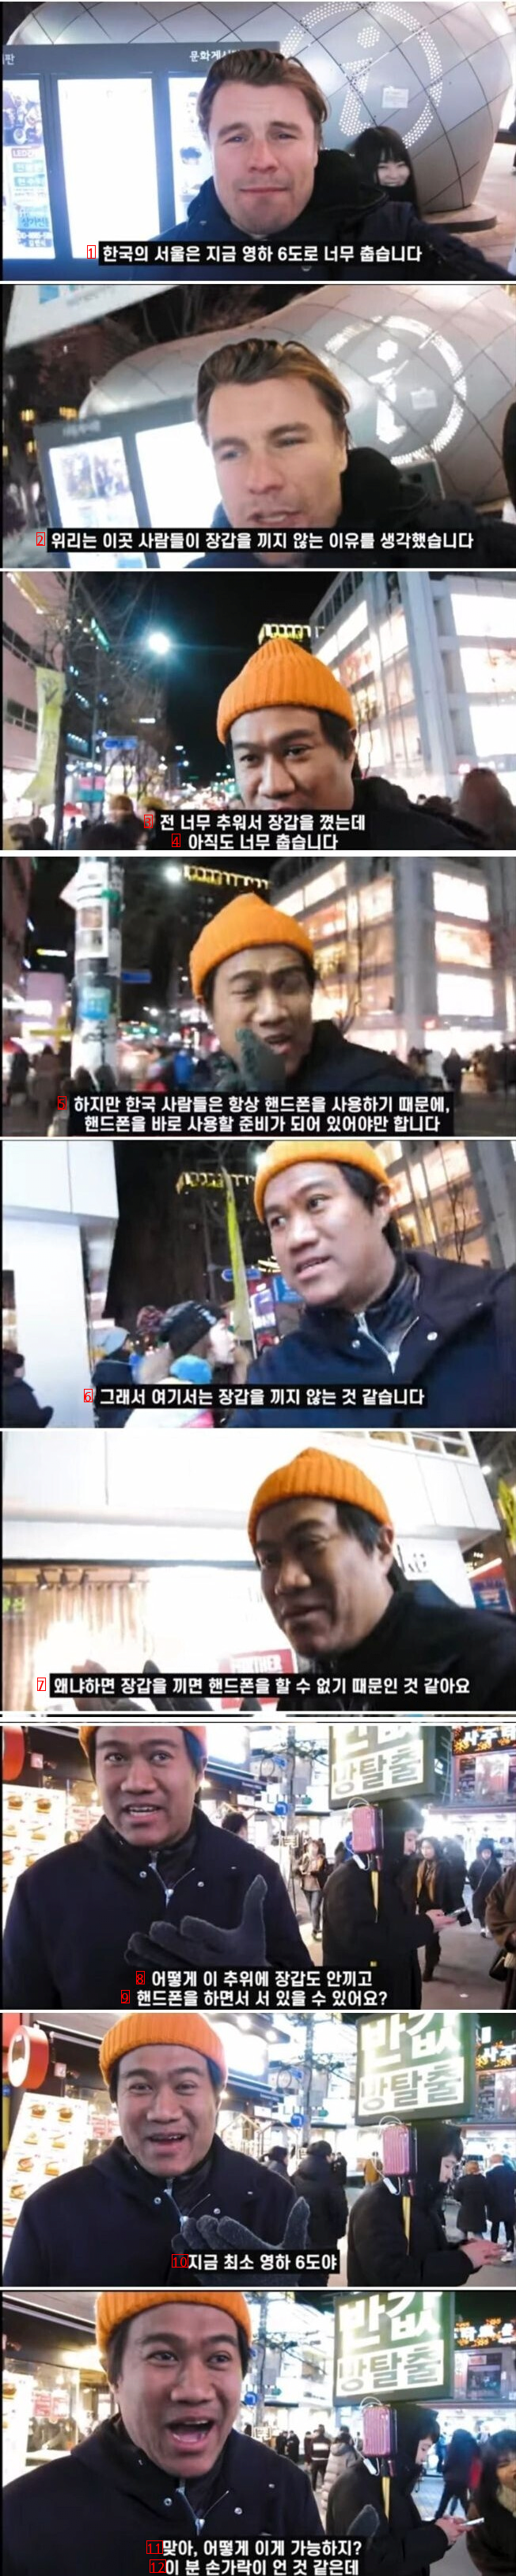 외국인들이 놀라는 한국의 겨울 풍경